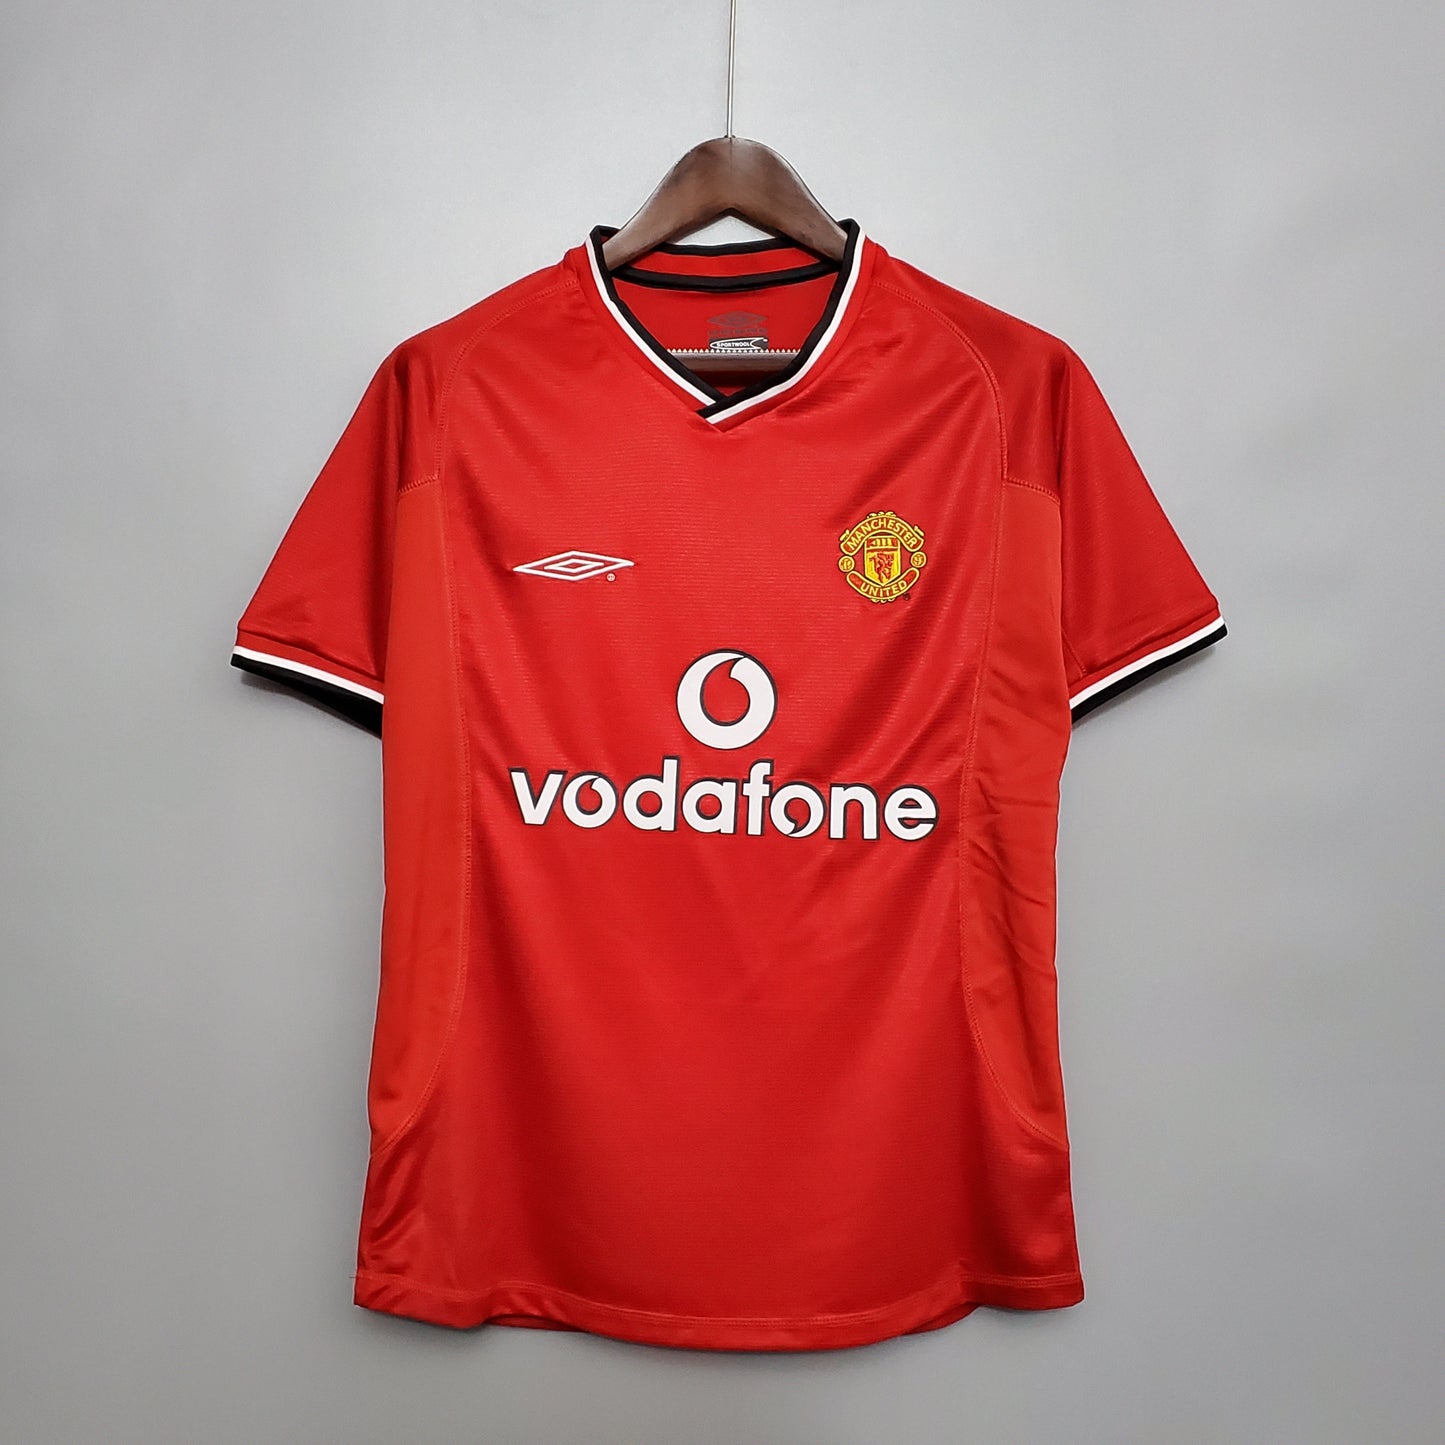 Retro Manchester United Home Kit 00/01